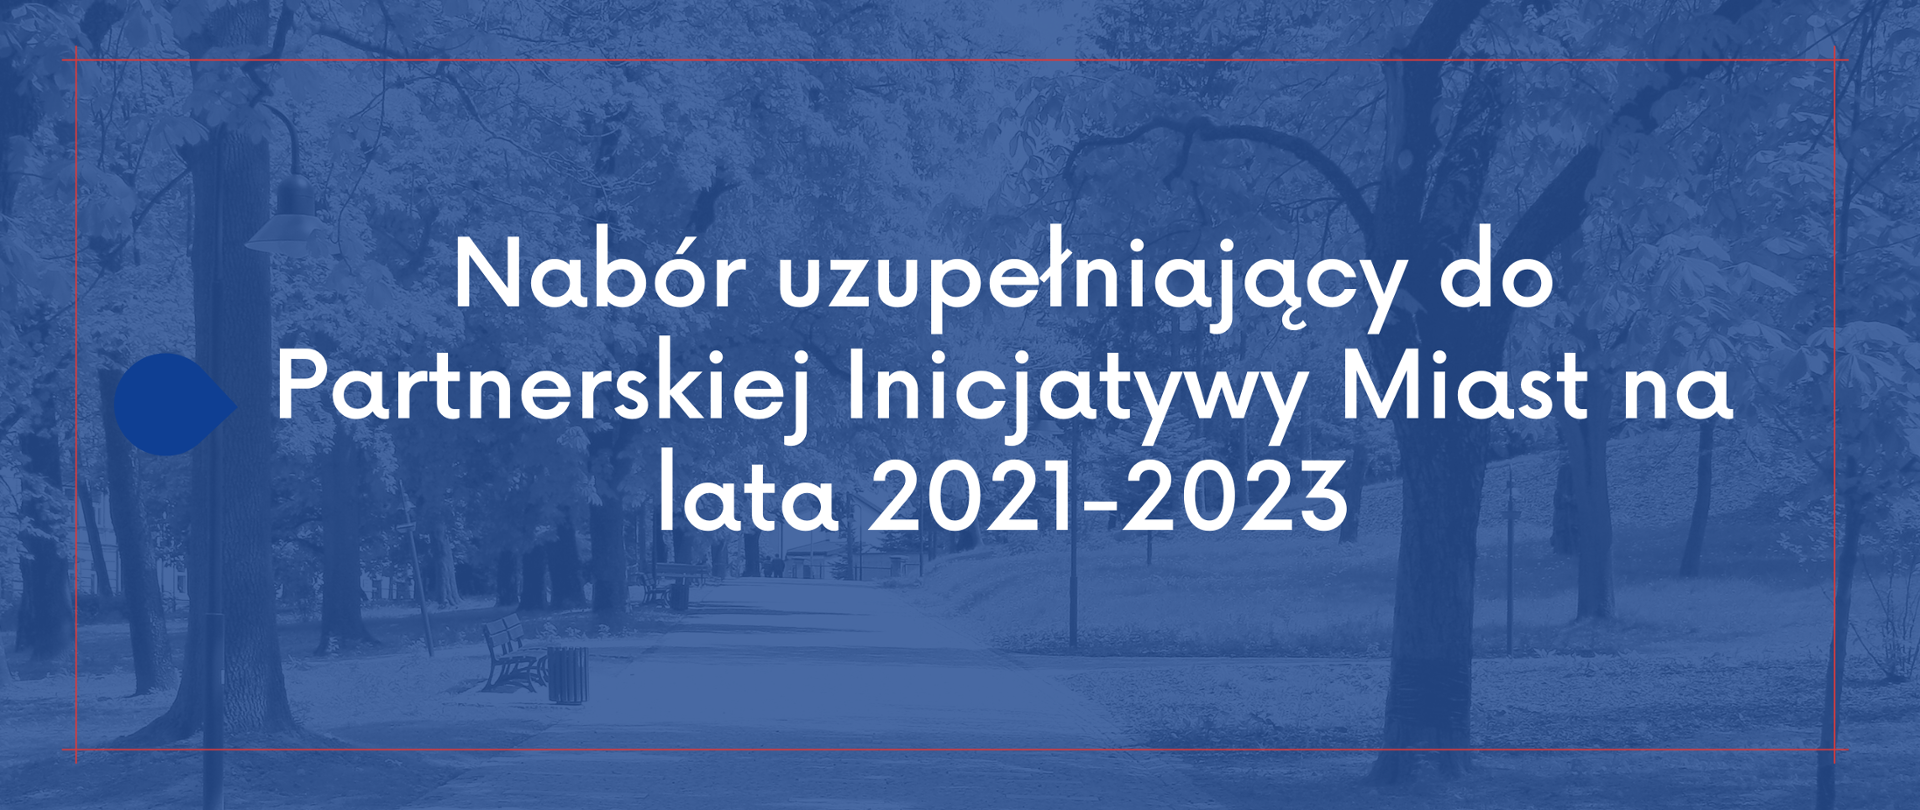 Nabór uzupełniający do Partnerskiej Inicjatywy Miast na lata 2021-2023